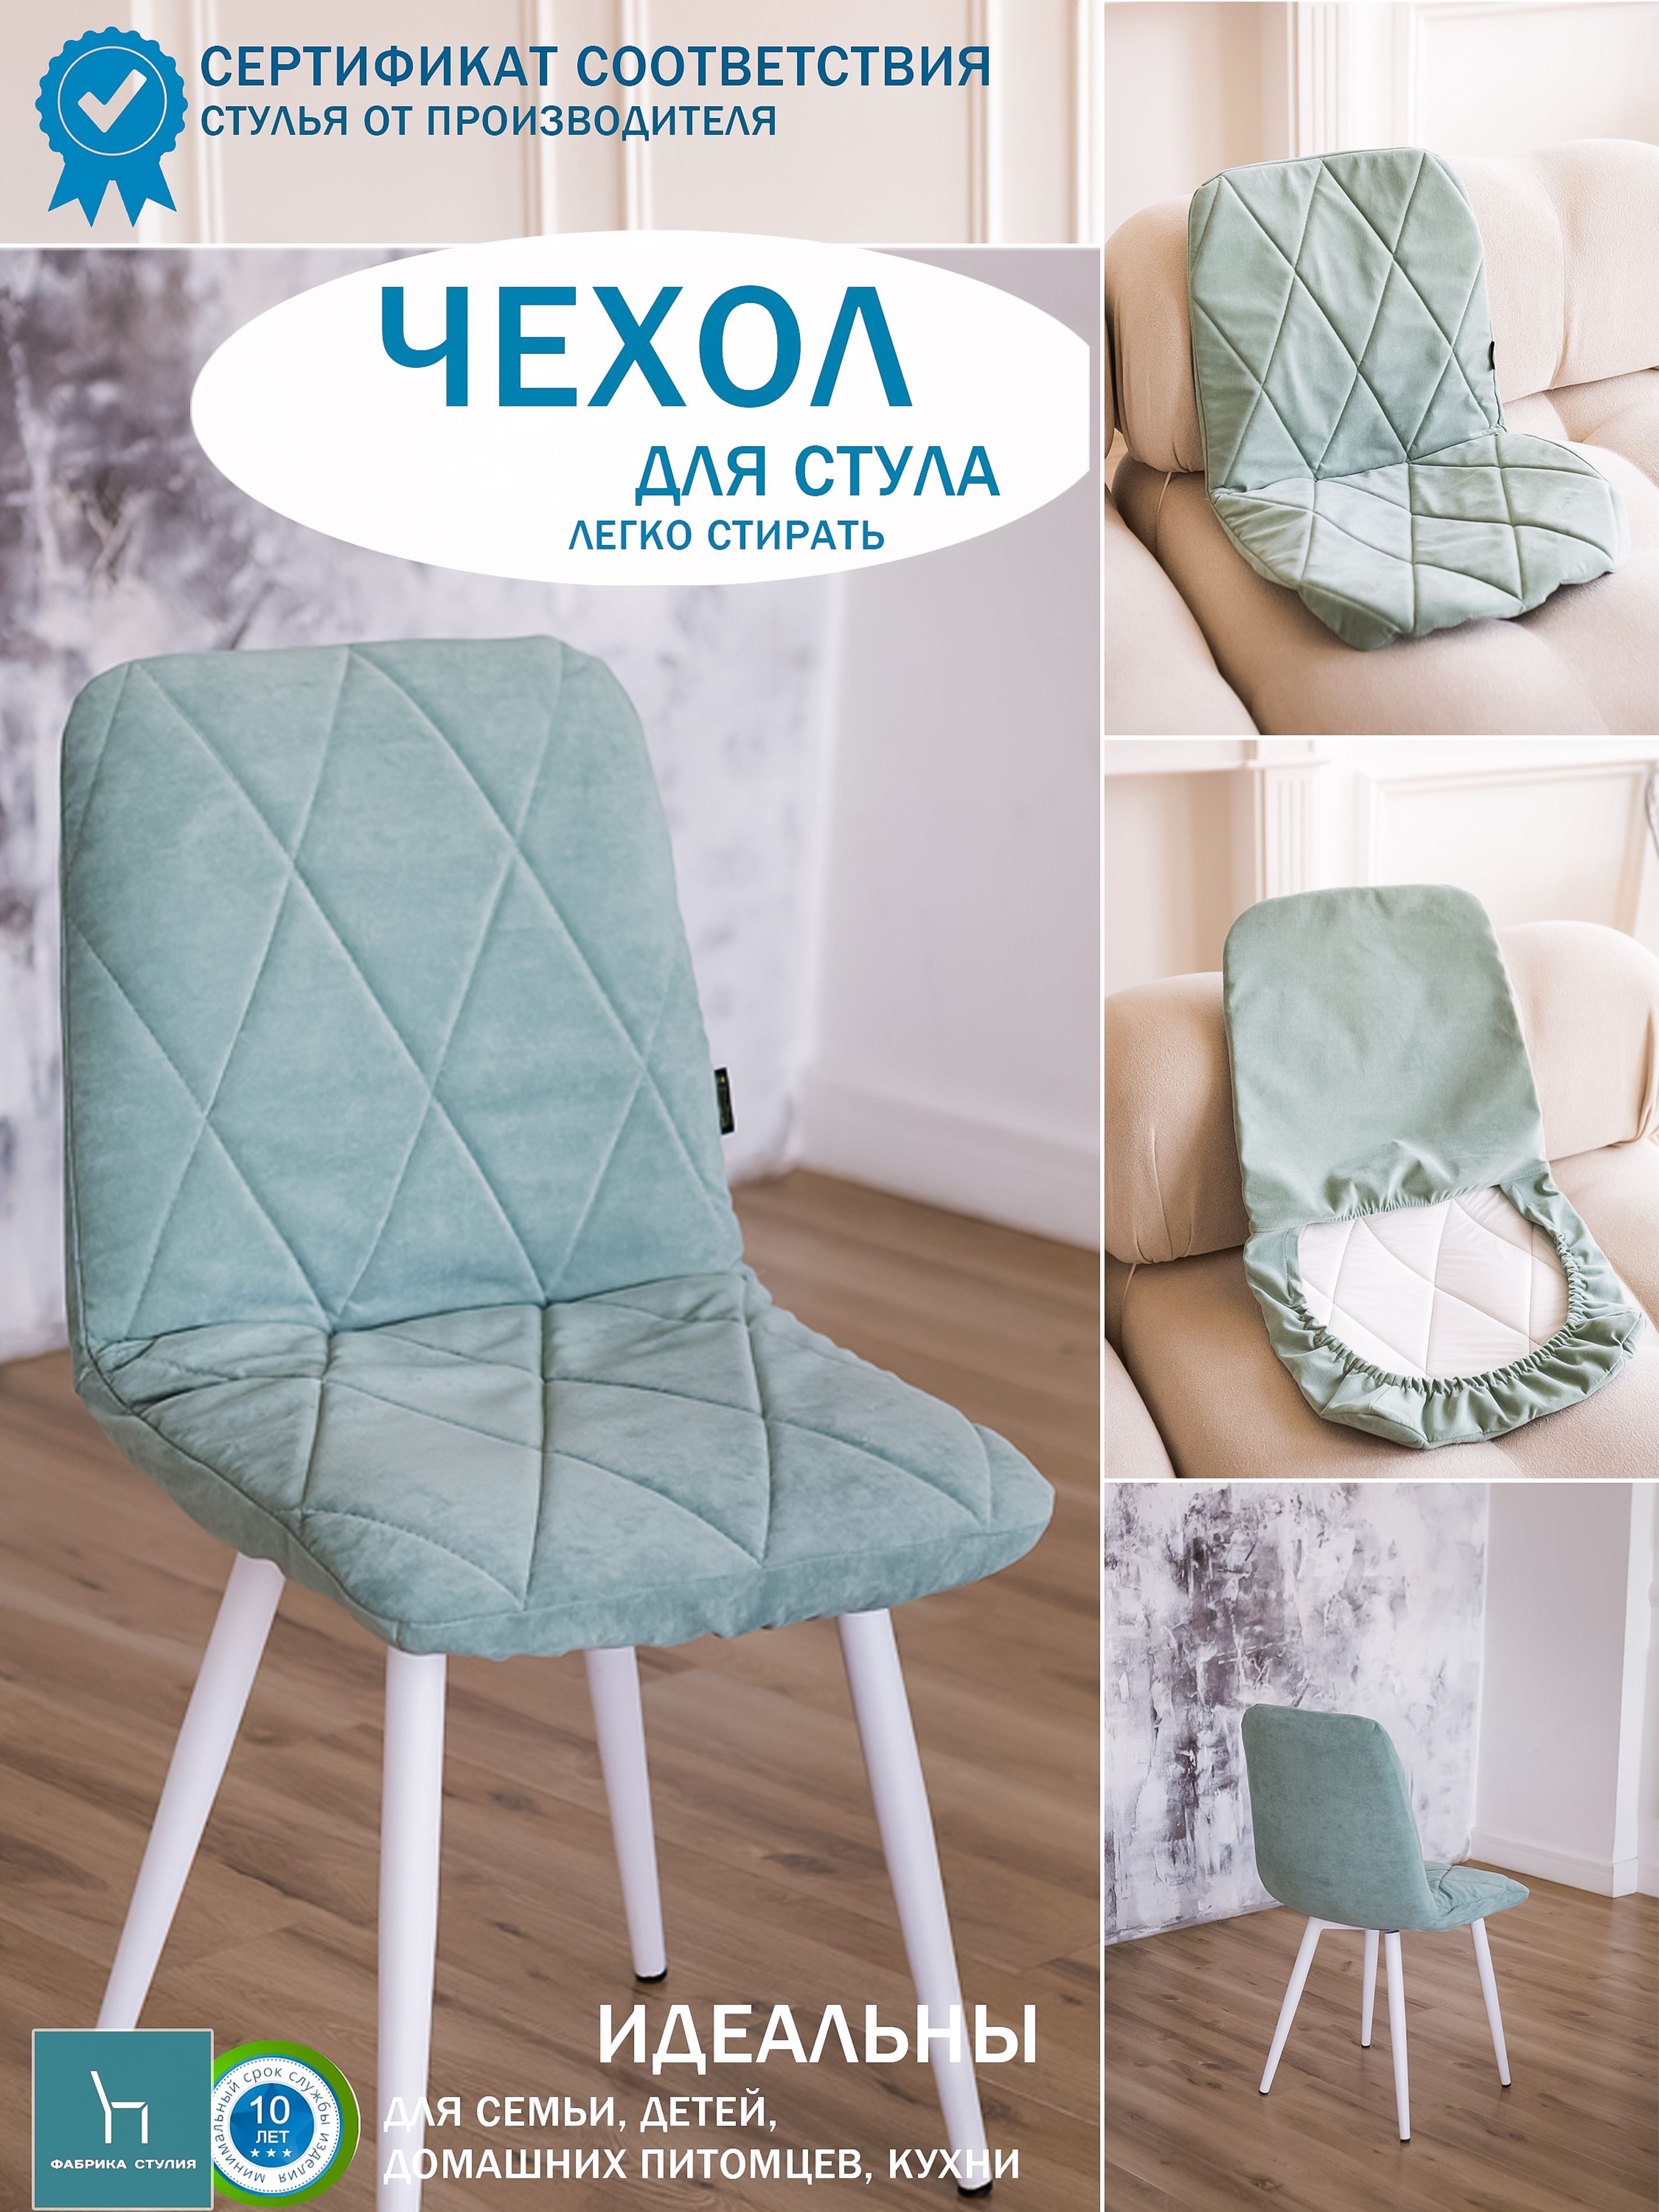 Чехлы на стулья - цена, фото, купить в интернет-магазине ИКЕА - вороковский.рф